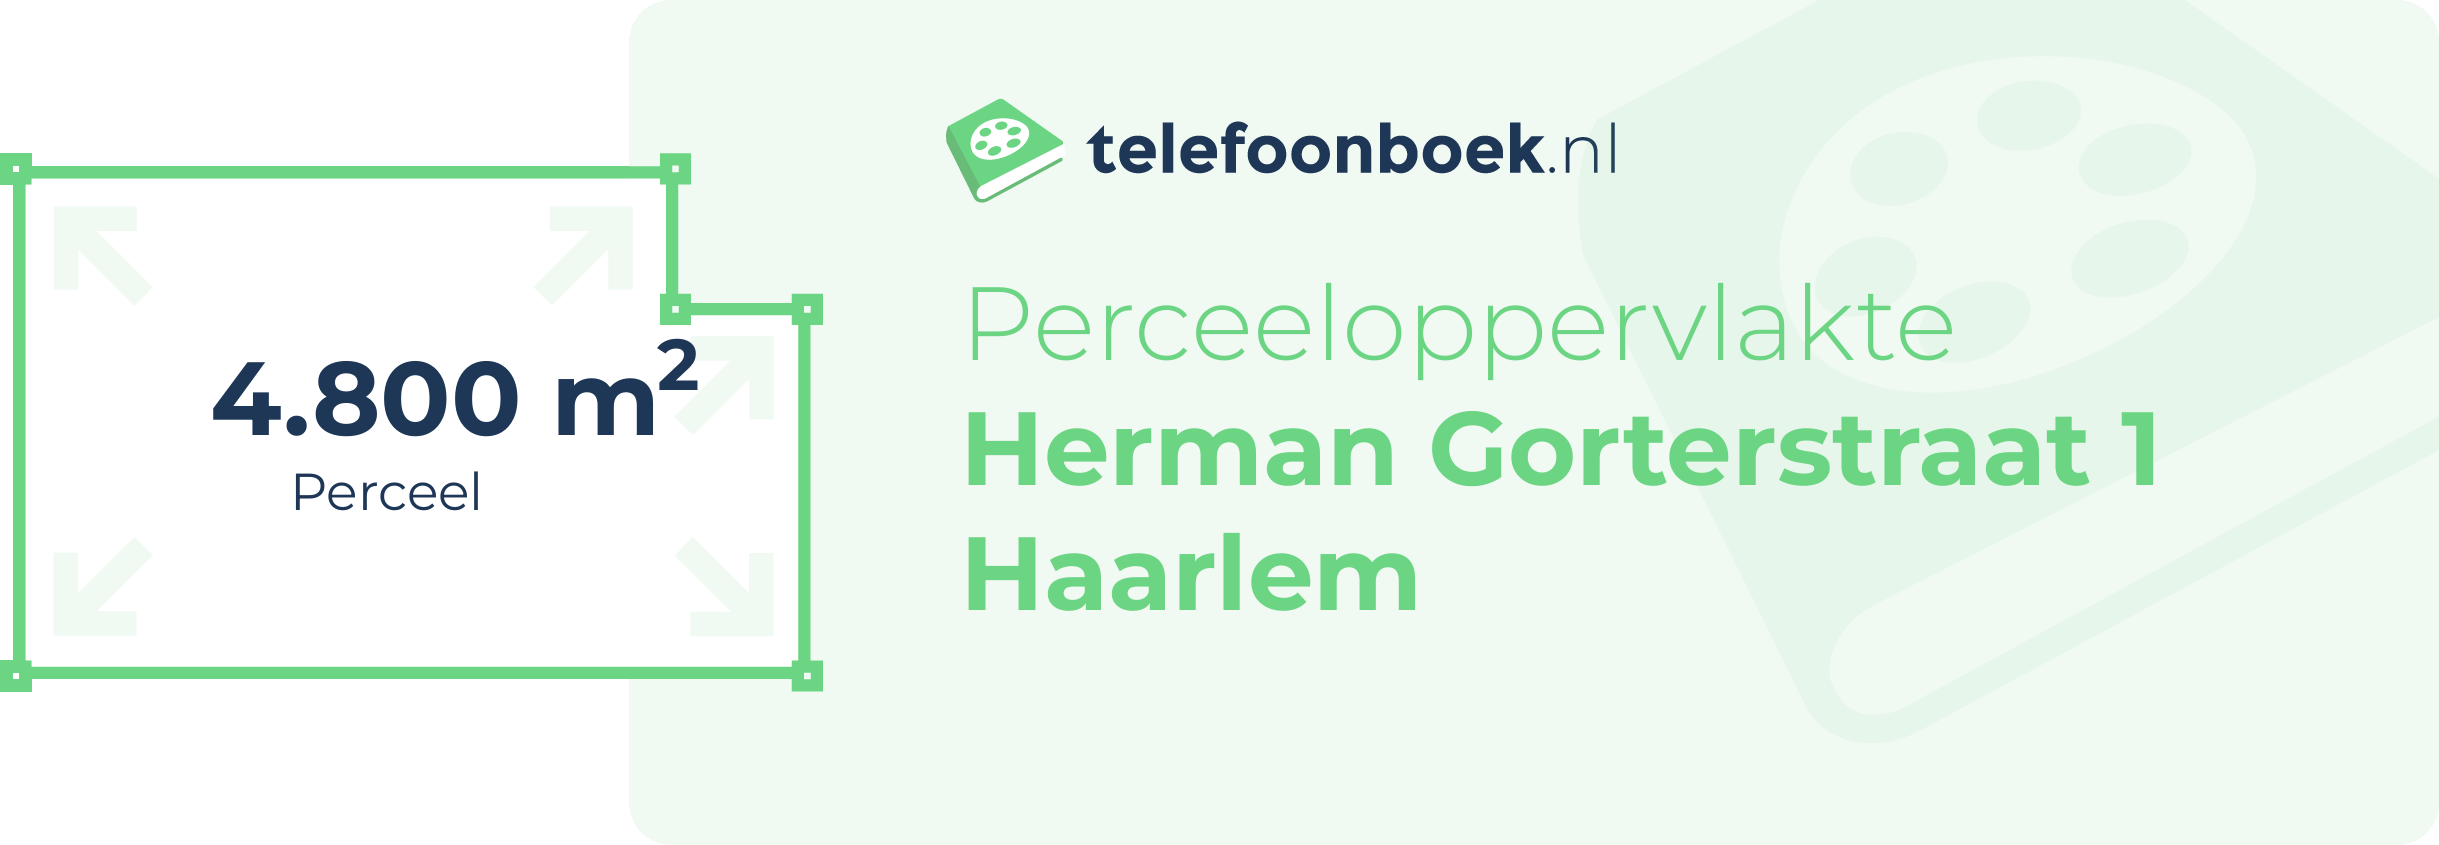 Perceeloppervlakte Herman Gorterstraat 1 Haarlem